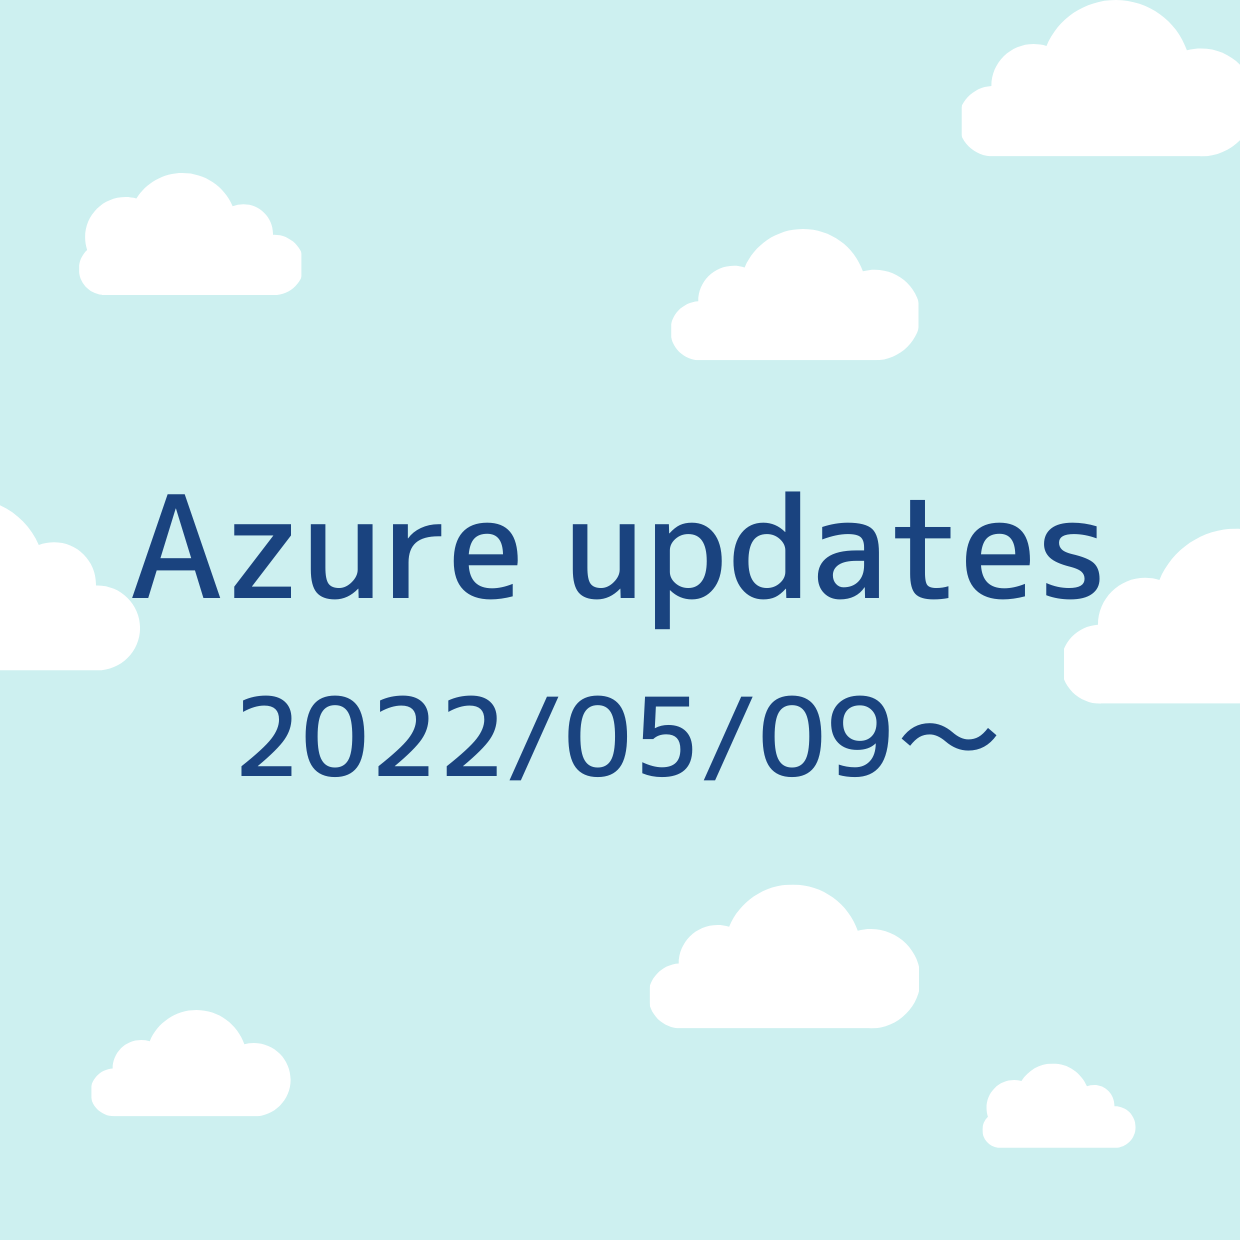 2022/05/09 週の Azure updates 日本語速報